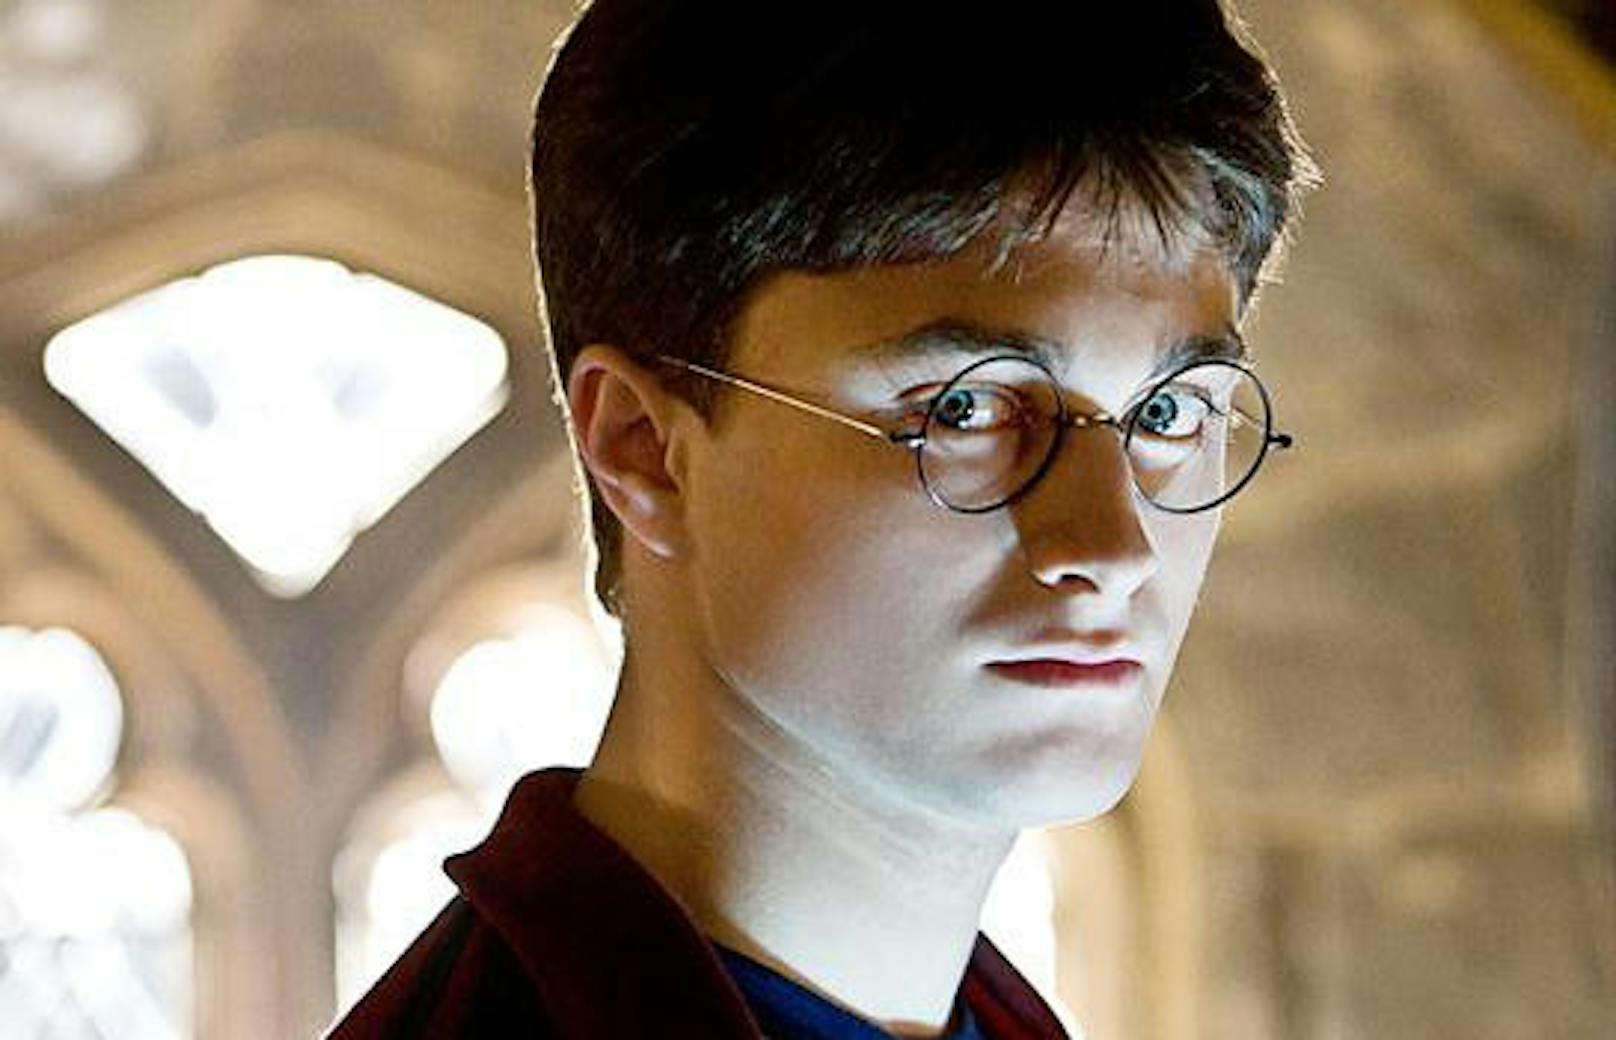 Daniel Radcliffe in "Harry Potter und der Halbblutprinz"